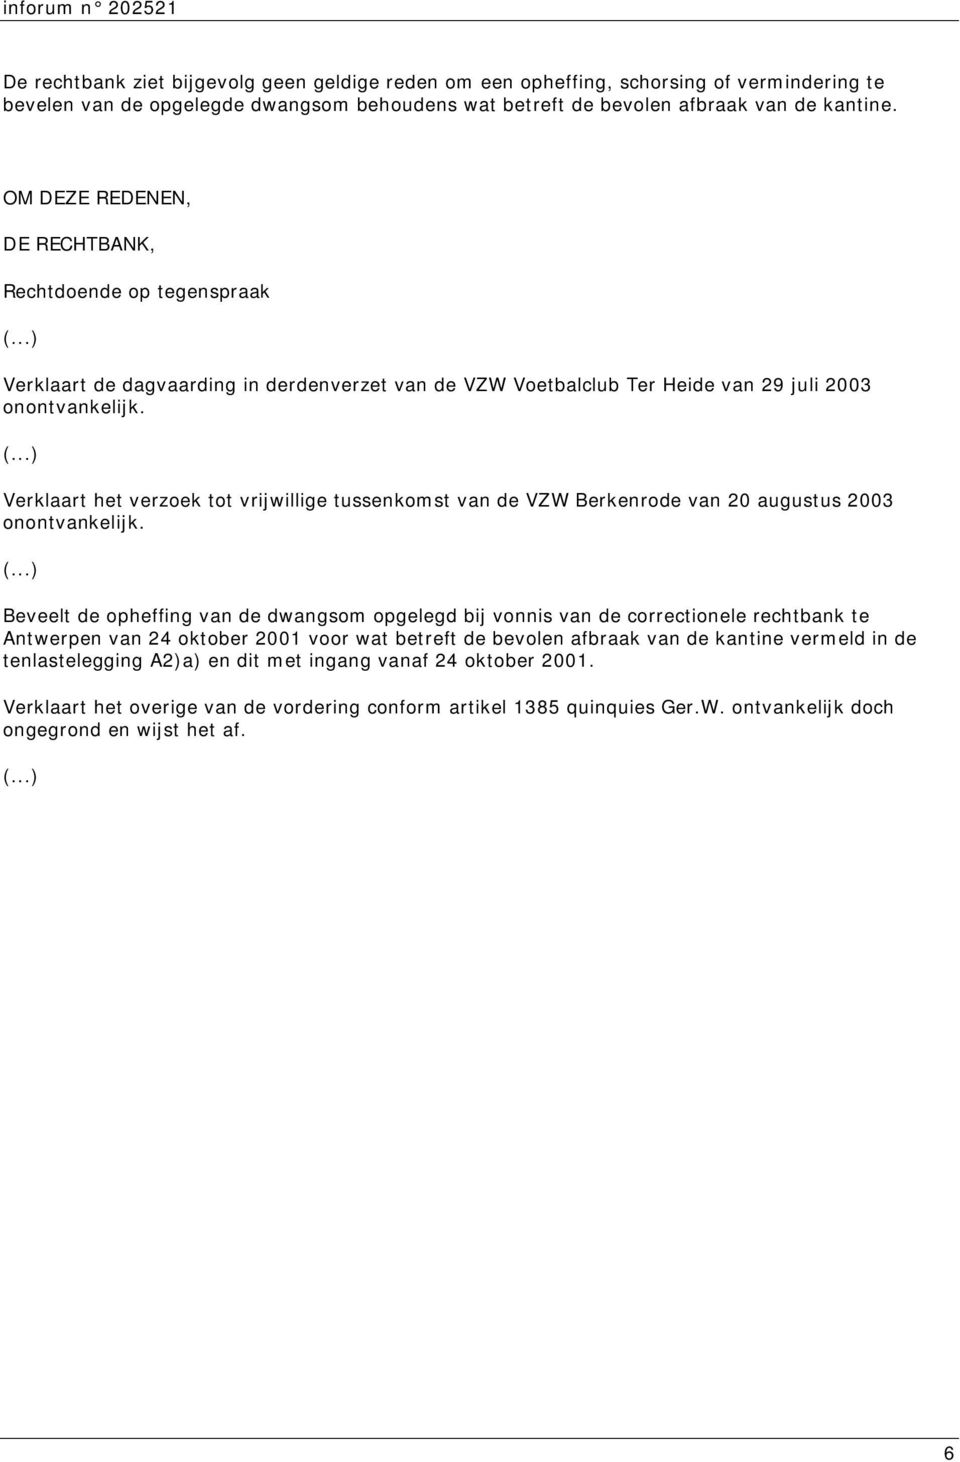 Verklaart het verzoek tot vrijwillige tussenkomst van de VZW Berkenrode van 20 augustus 2003 onontvankelijk.